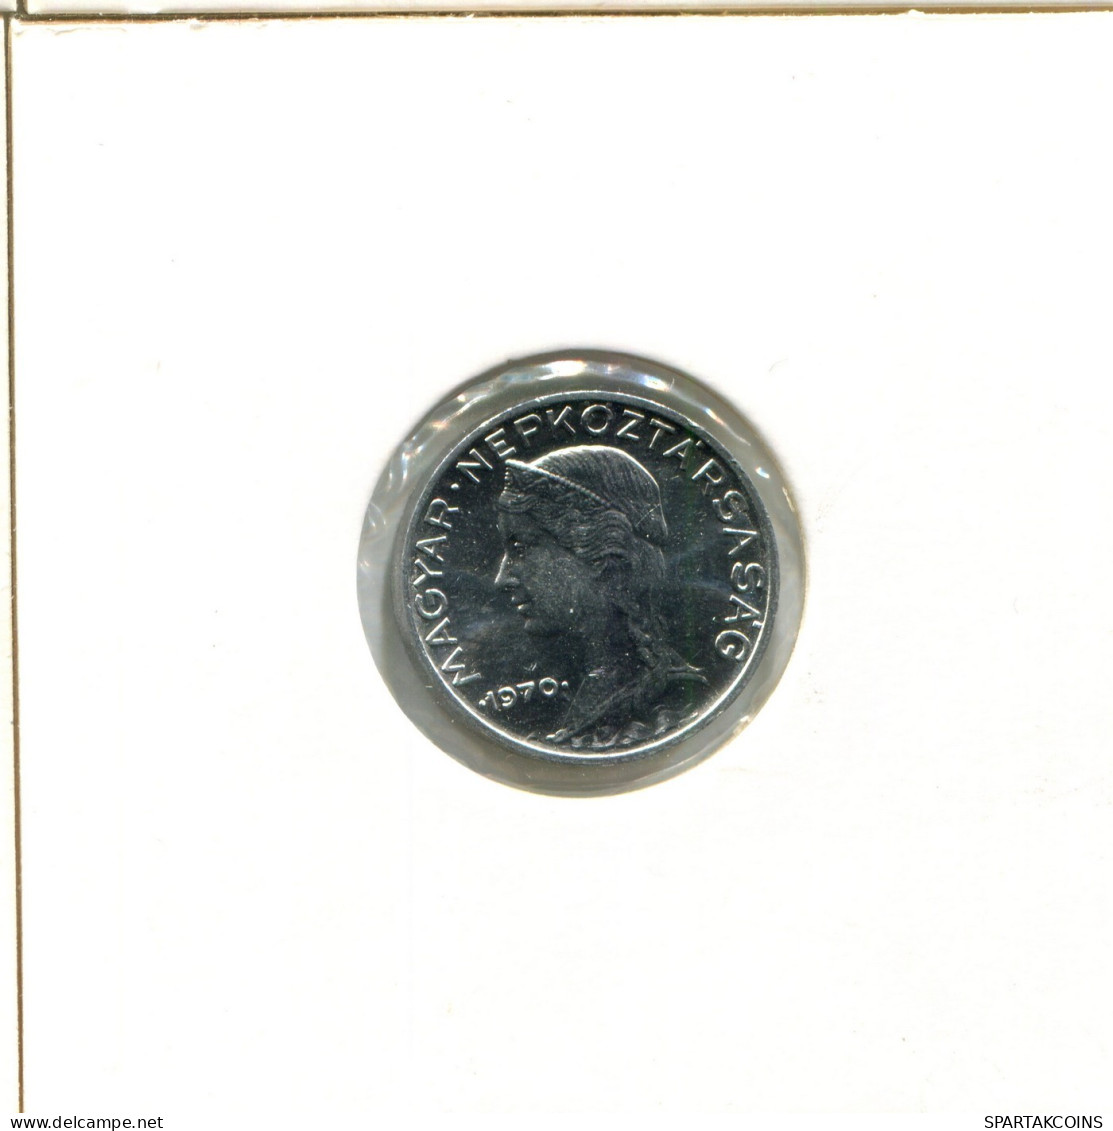 5 FILLER 1970 HUNGARY Coin #AX736.U.A - Hungary